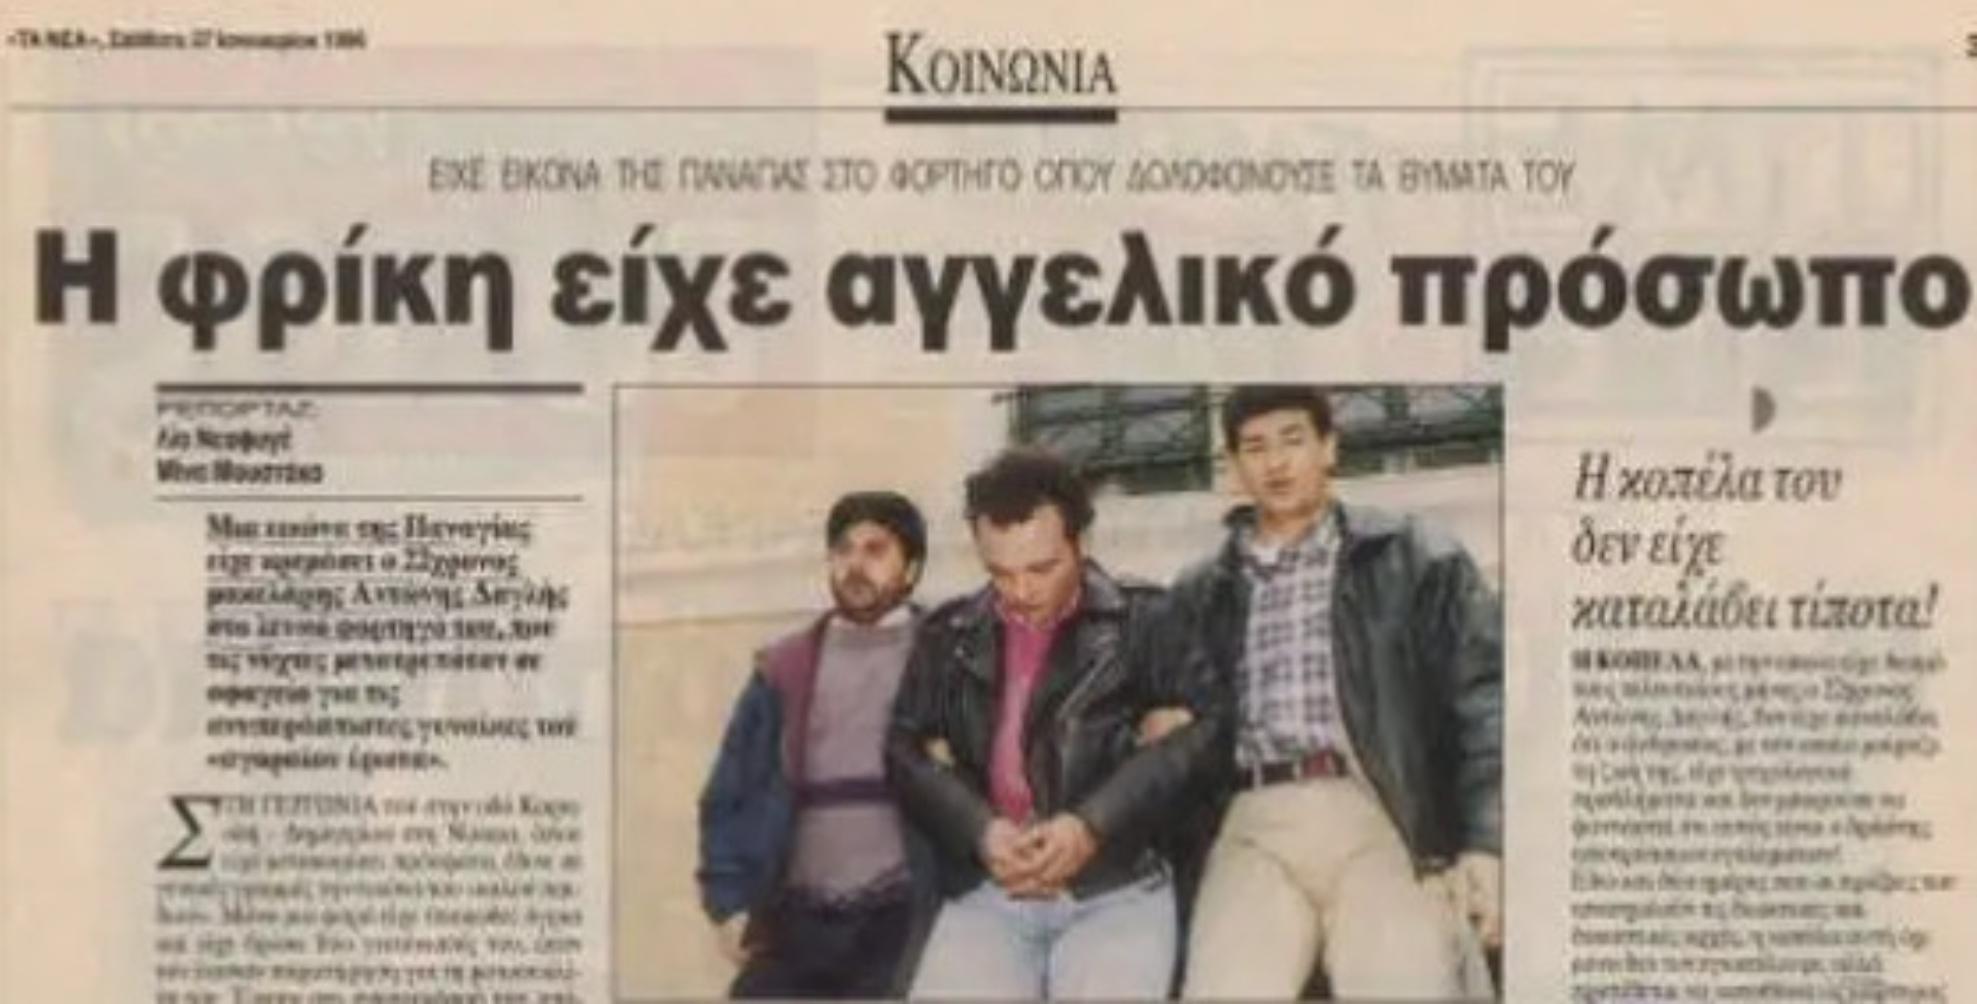 Ο σχιζοφρενής “Έλληνας αντεροβγάλτης” – Το κινηματογραφικό τέλος του δολοφόνου των ιερόδουλων